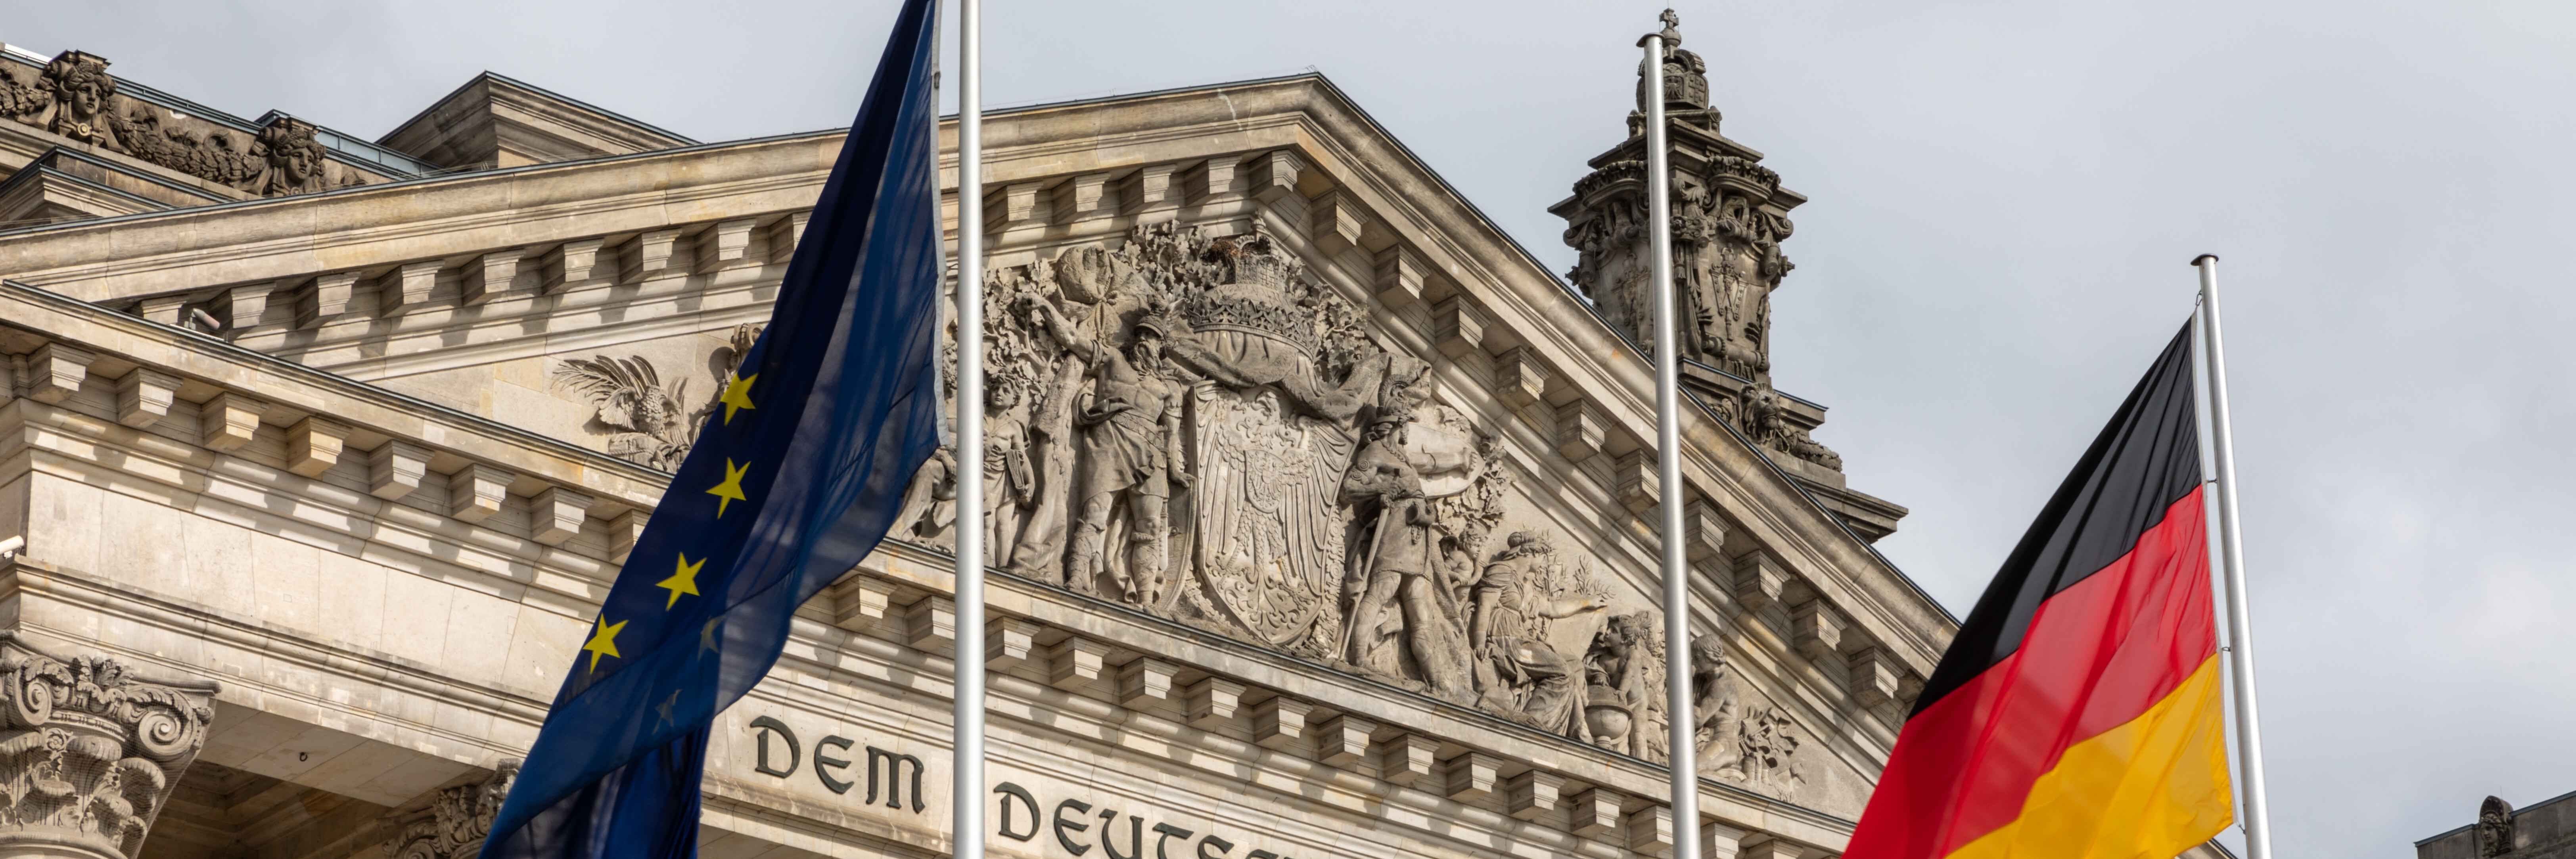 Berliner Reichstaggebäude mit Europa- und Deutschlandflagge im Vordergrung. (Ausschnitt)